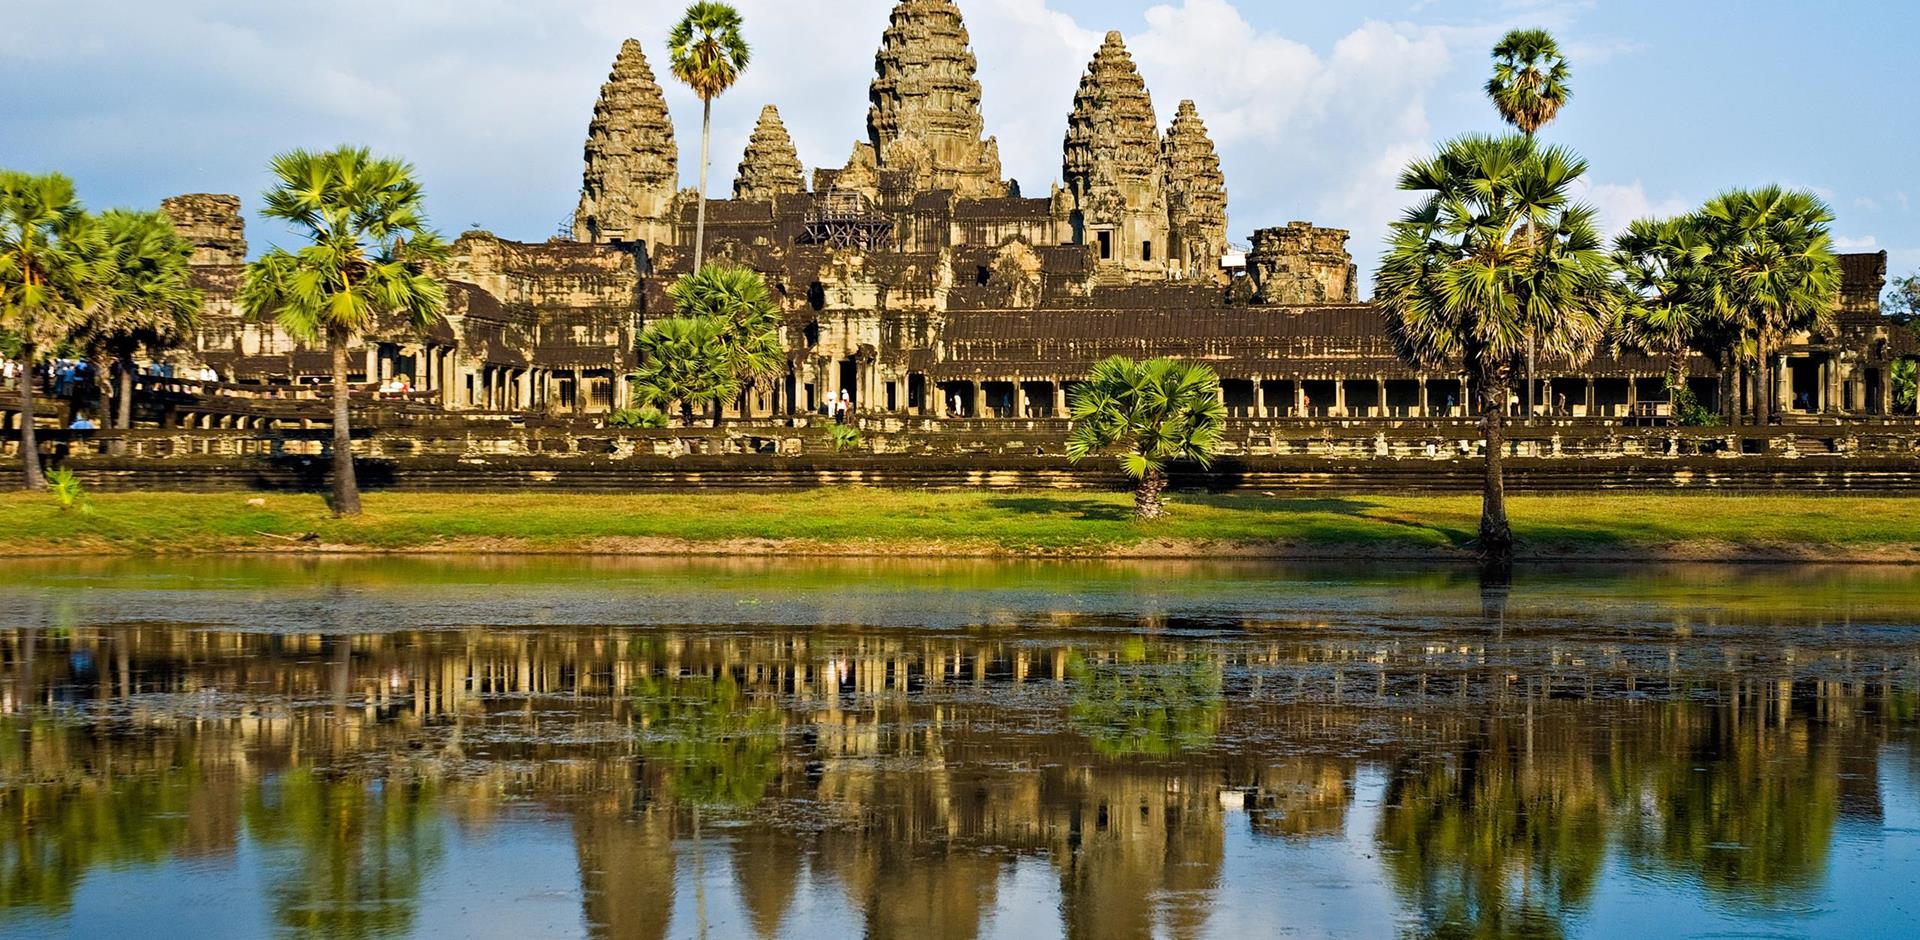 Angkor Wat, Cambodia, Asia